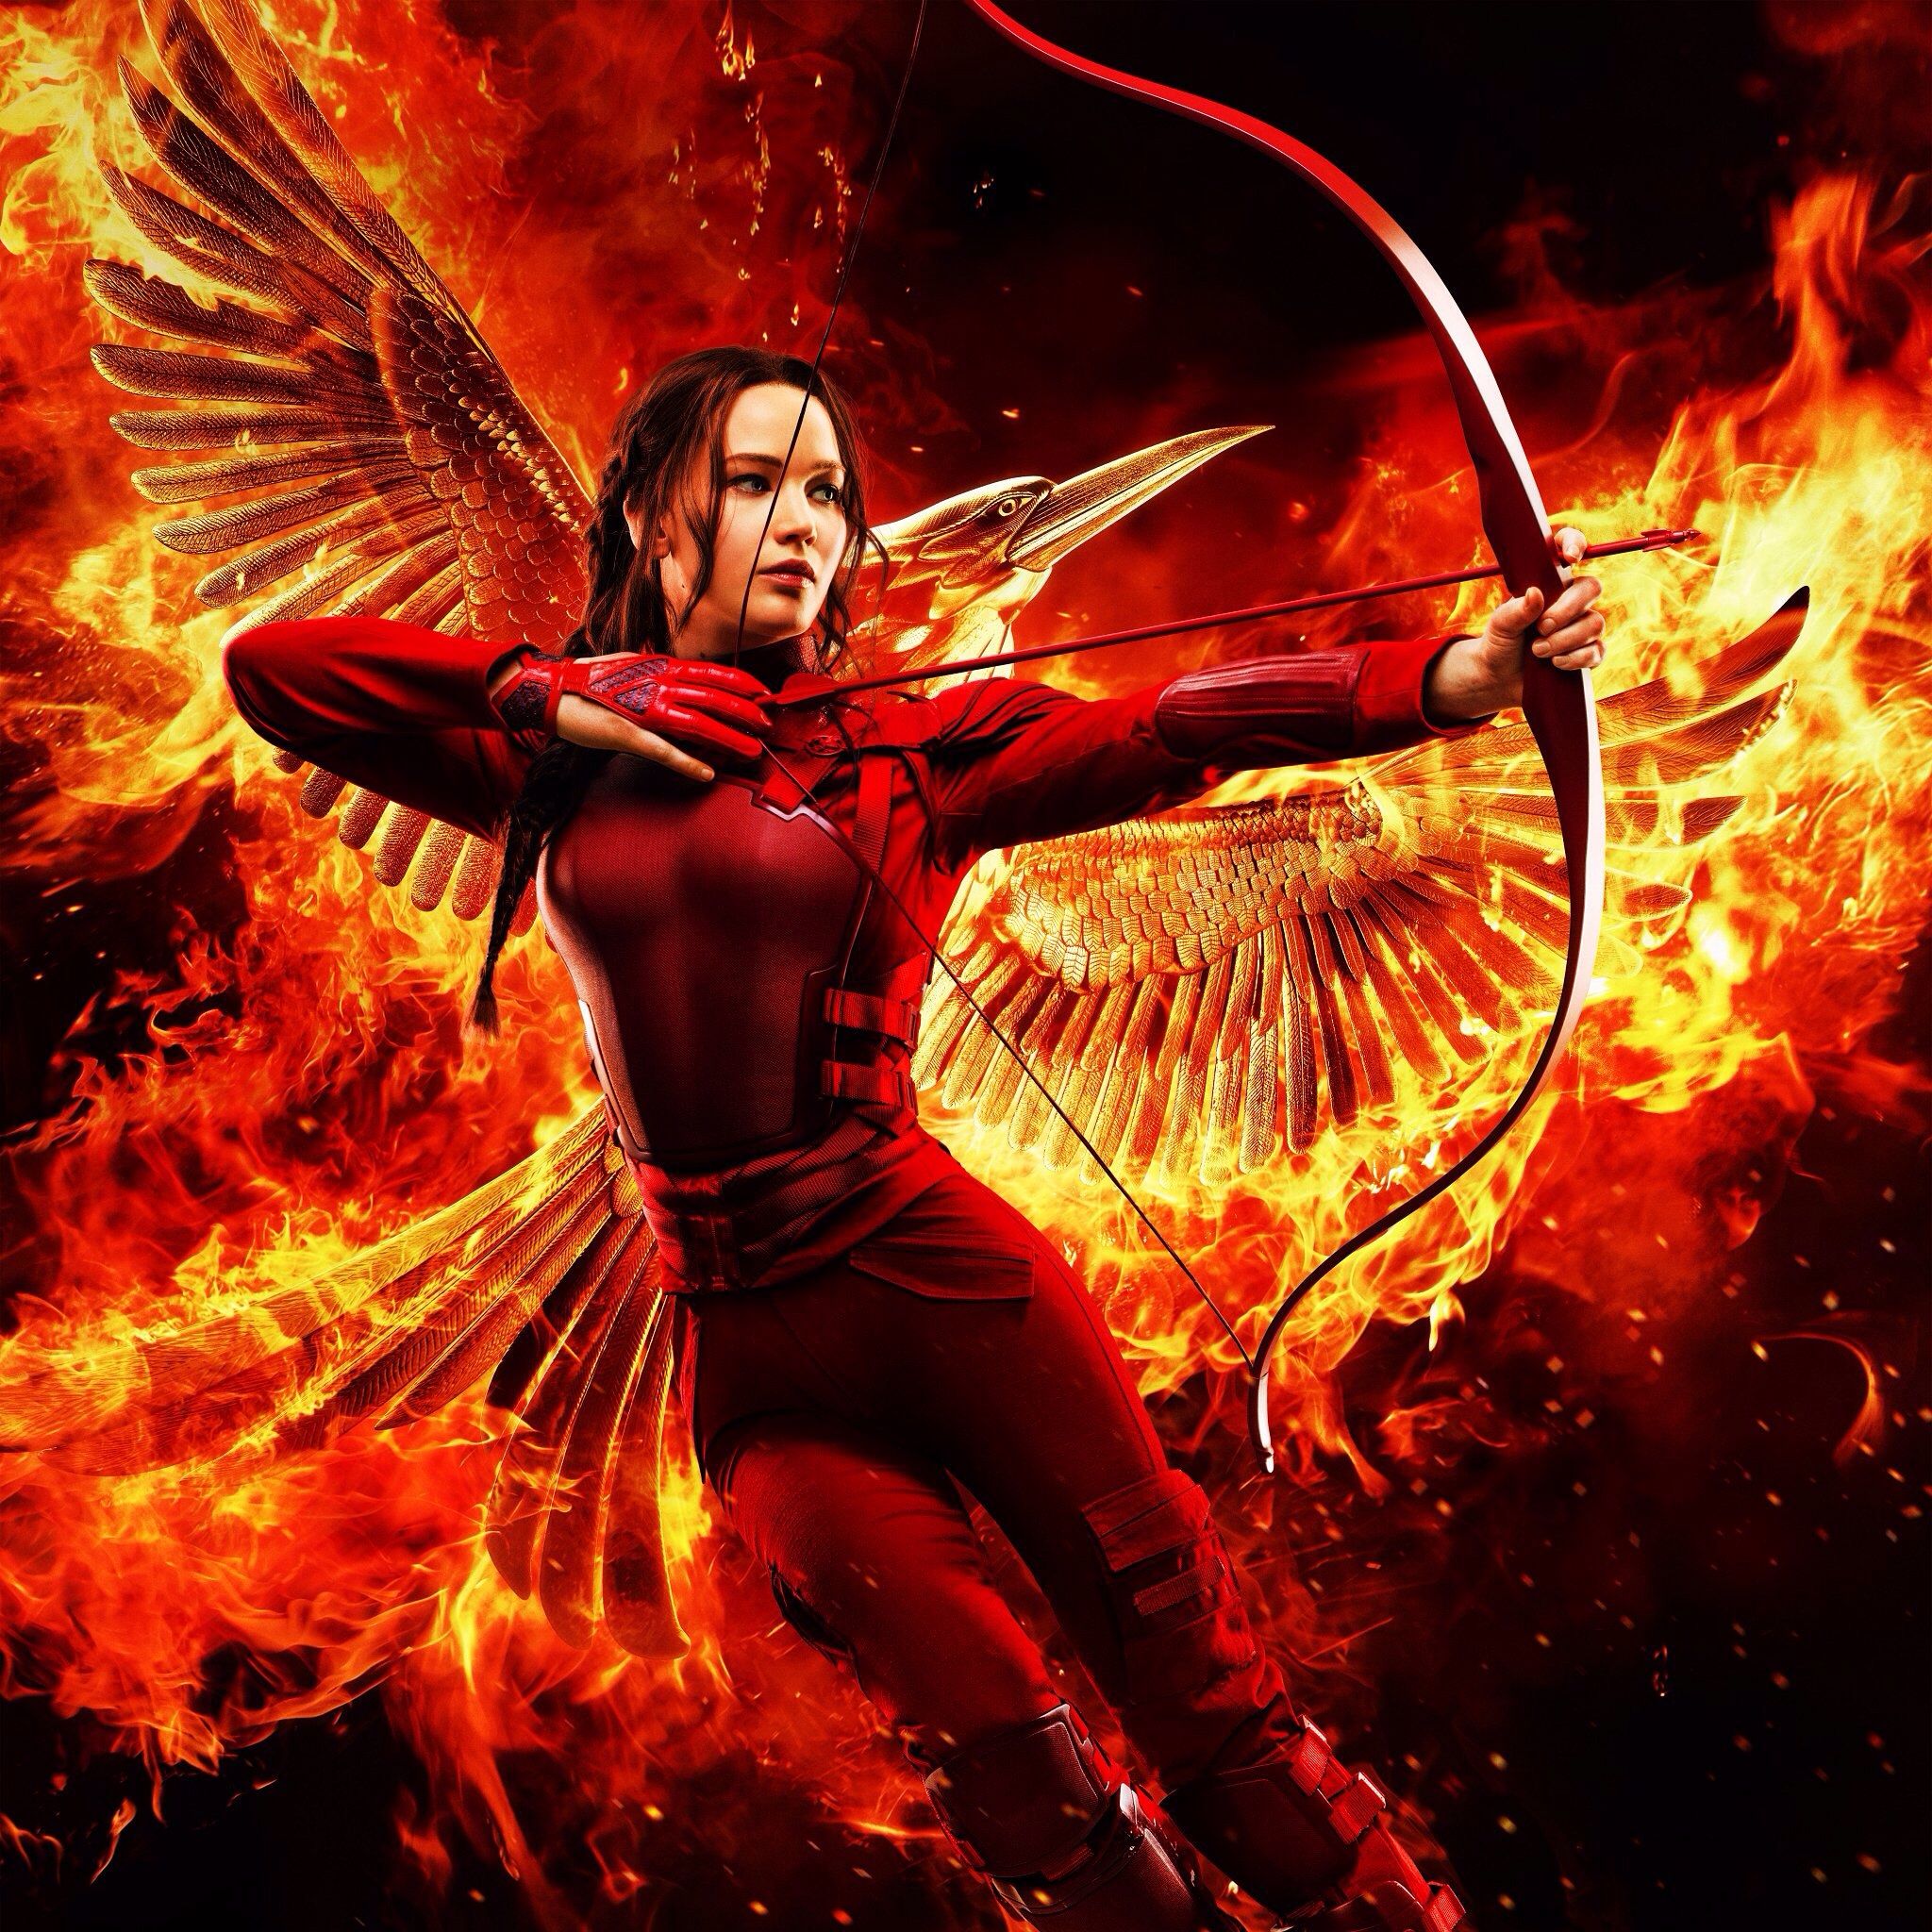 Katniss Everdeen hunger games wallpaper